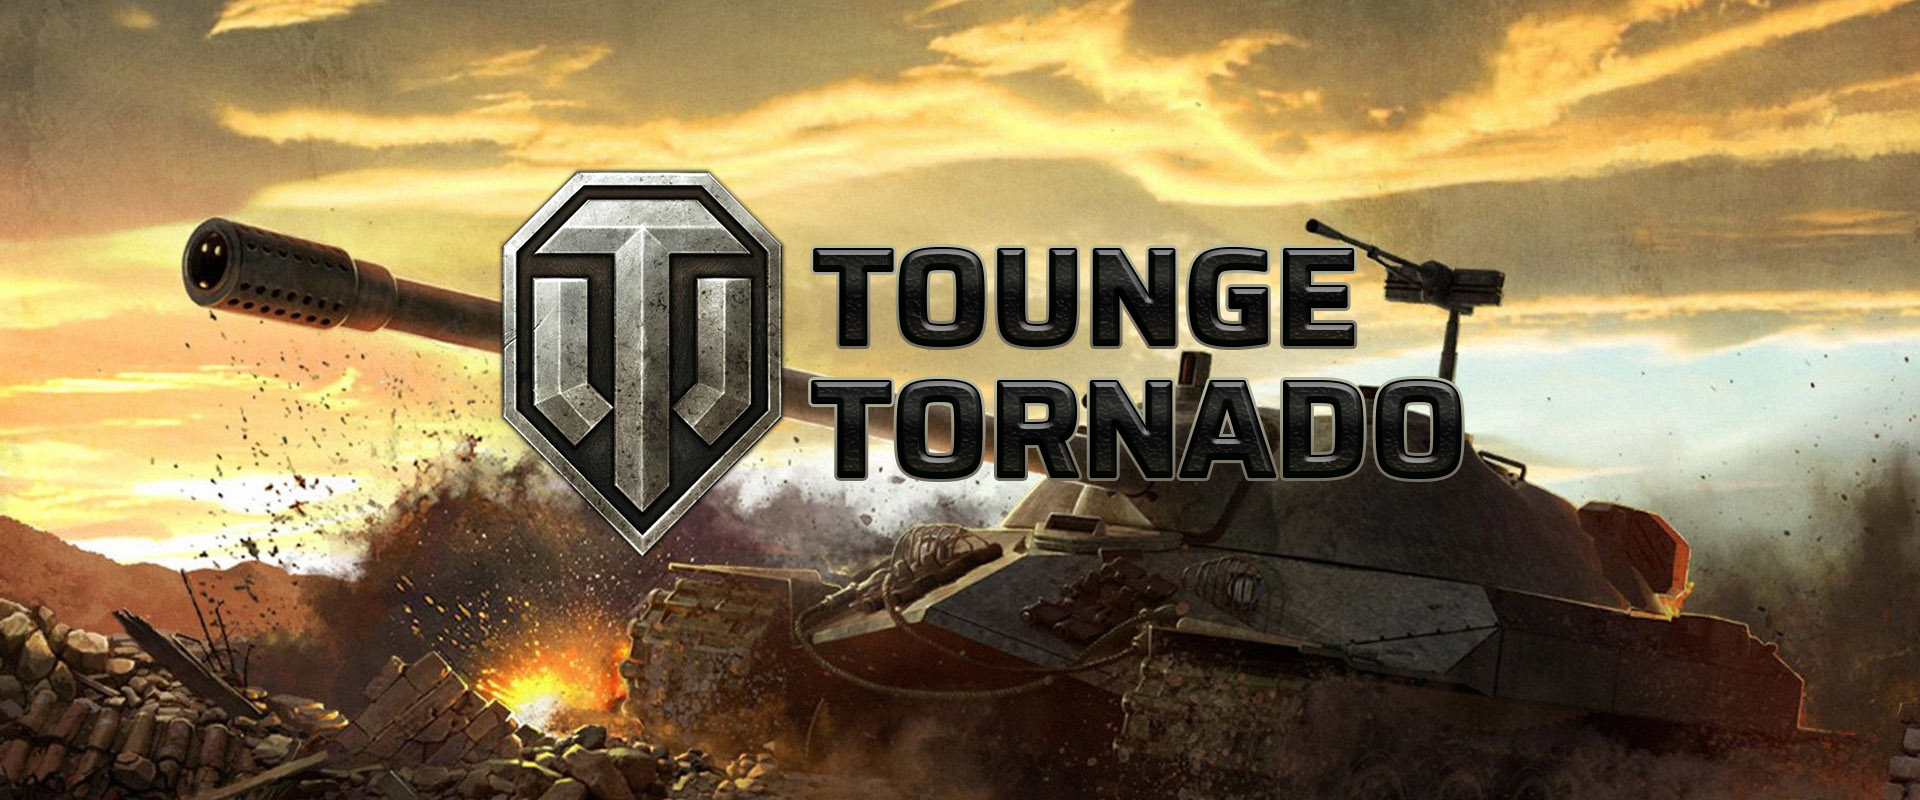 Megállíthatatlan a Tongue Tornado!